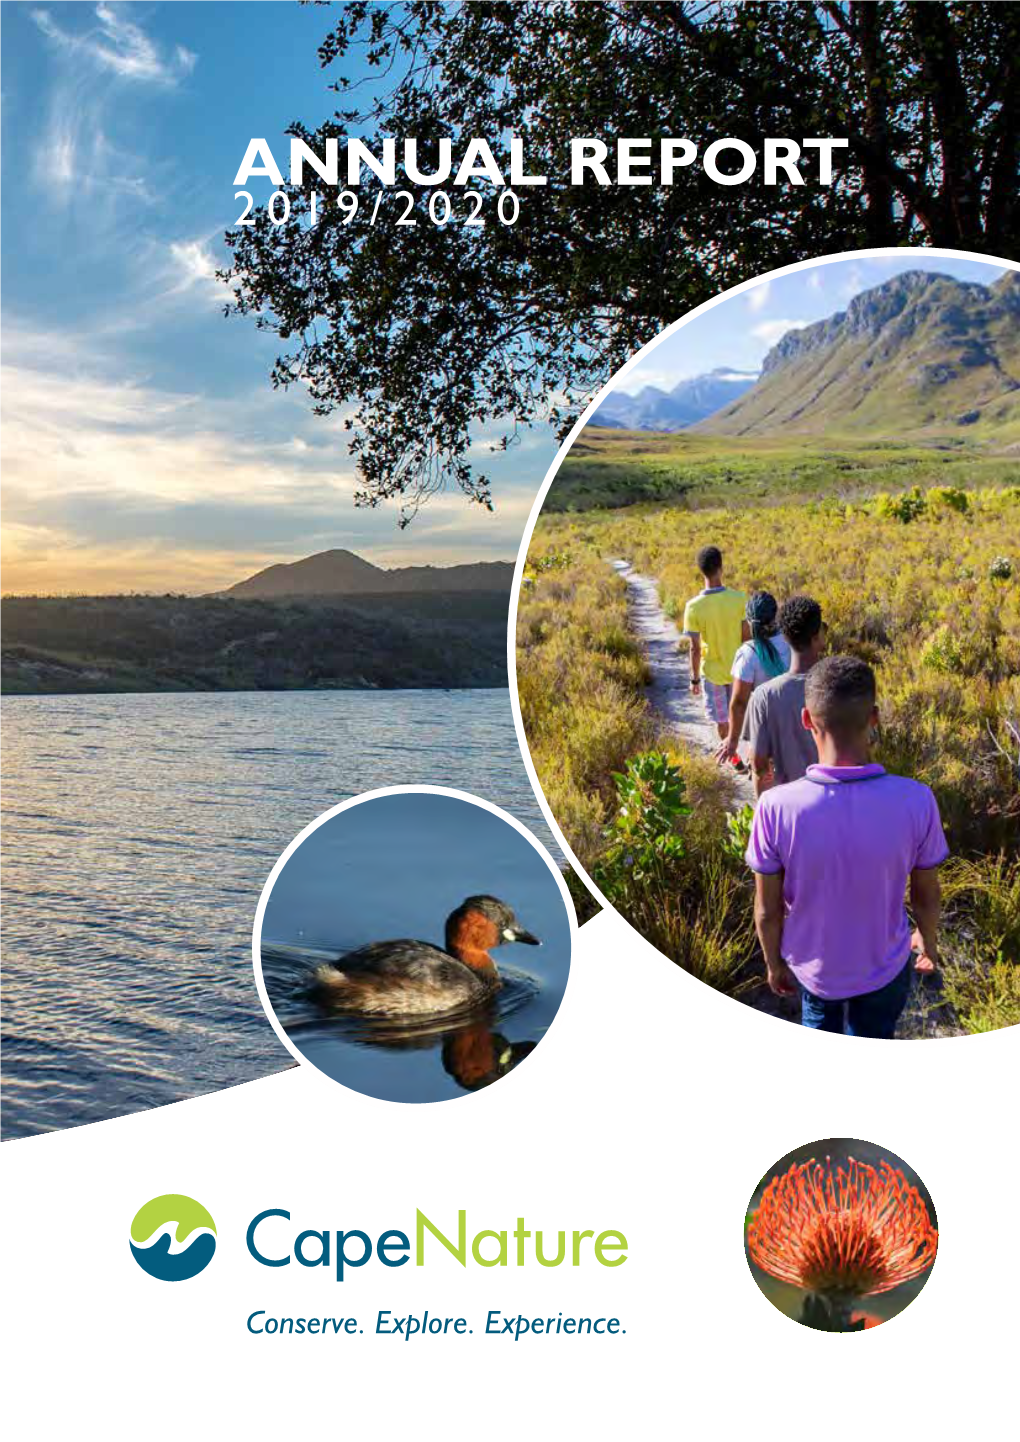 Annual Report 2019/2020 2018/2019 Annual Annual Report | Capenature Capenature General Information